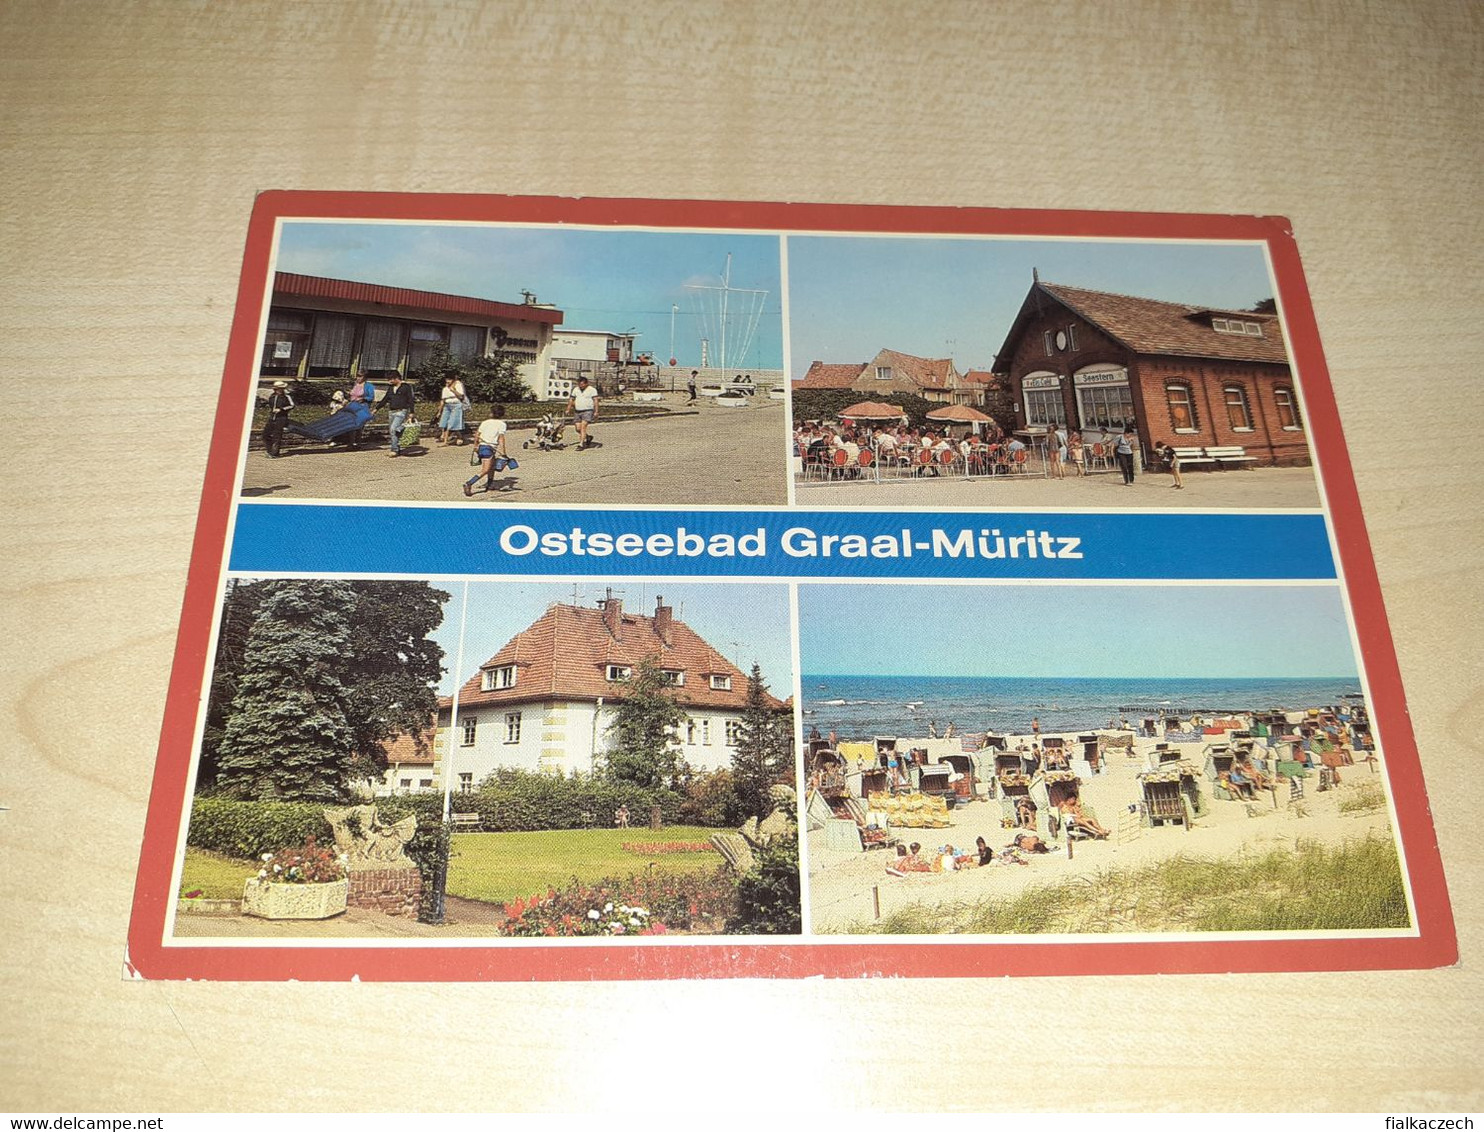 Graal-Muritz, Ostseebad, Germany - Graal-Müritz